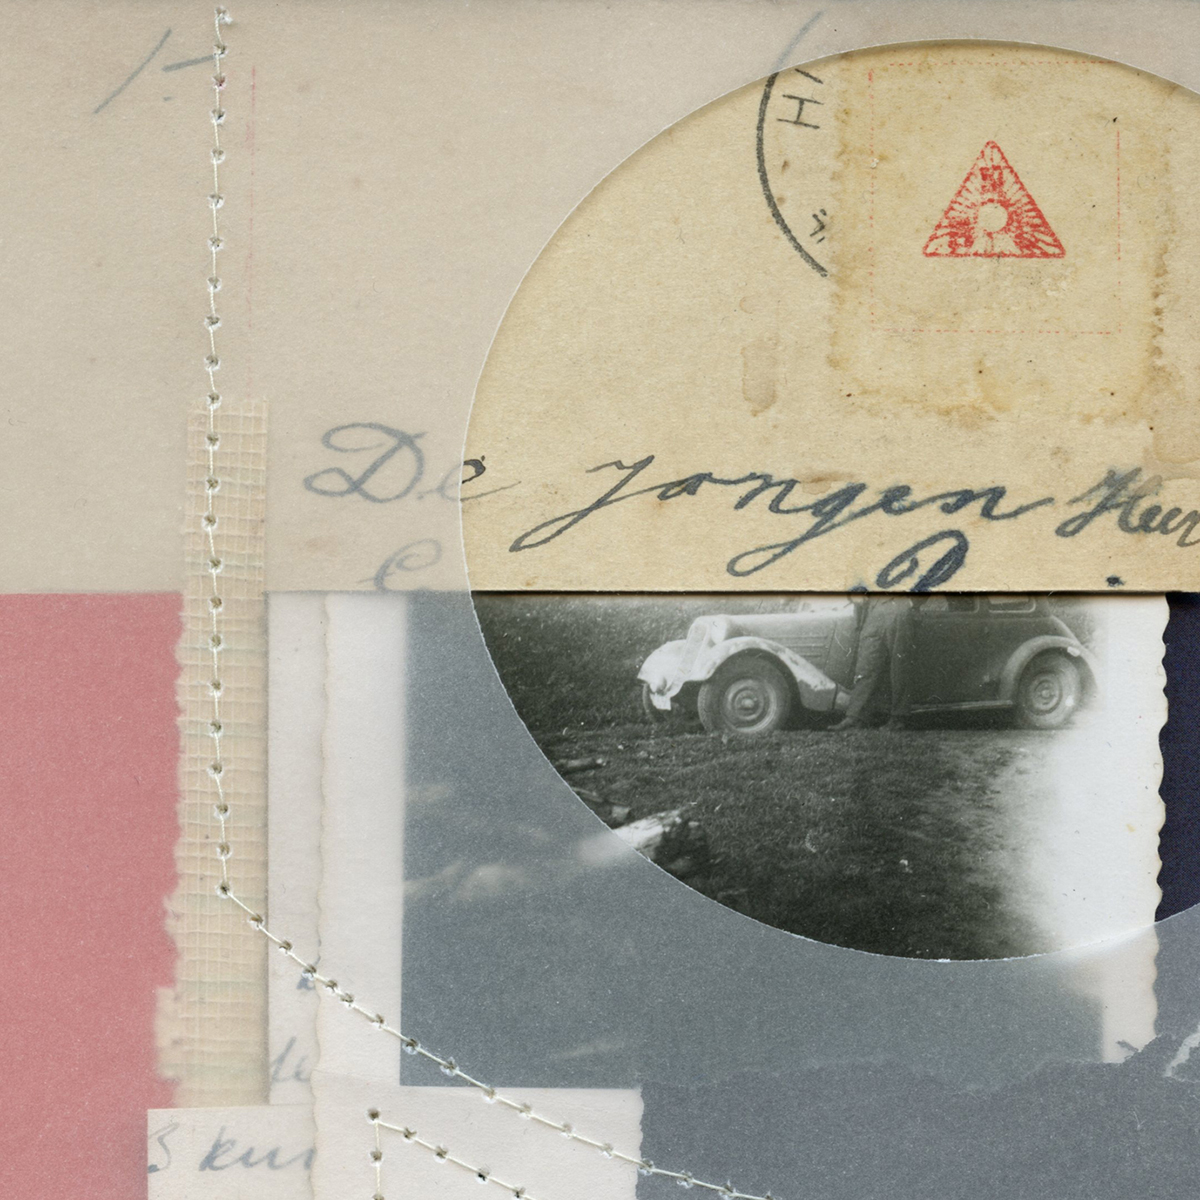 Poesie der kleinen Dinge #48, 202010 x 10 cm in 30 x 30 cmPapercollage, Vintage handwritings, needled; framed